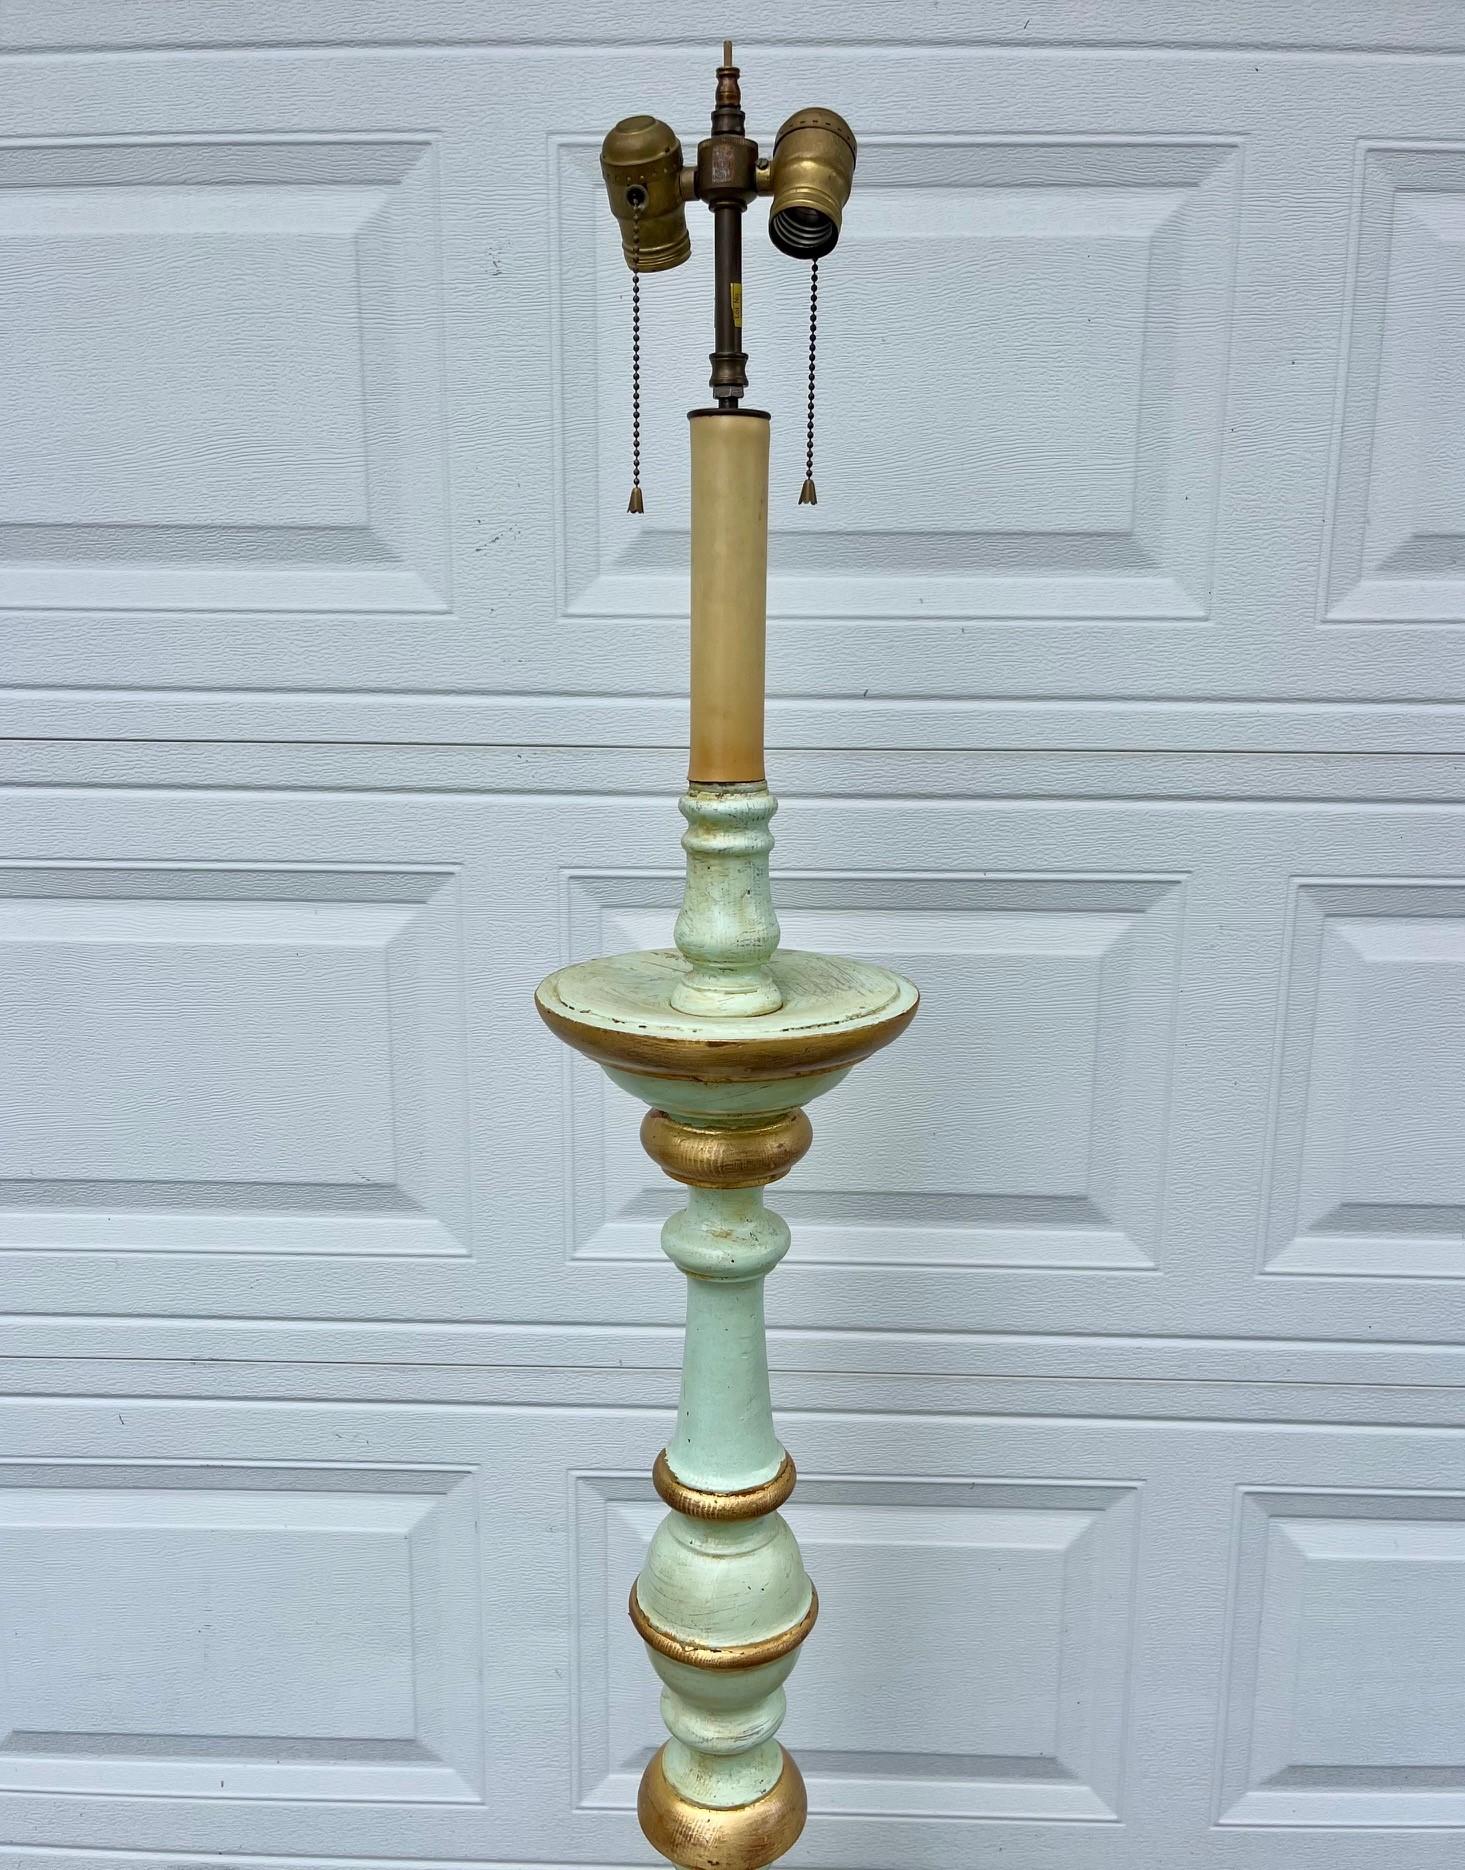 Antike italienische Holz-Stehlampe im Barockstil mit zwei Lichtern aus geschnitztem Fackelholz.

Anfang des 20. Jahrhunderts handgeschnitzt und gedrechselt im Barockstil mit zwei elektrischen Lampen. Der gedrehte Korpus ist polychrom in